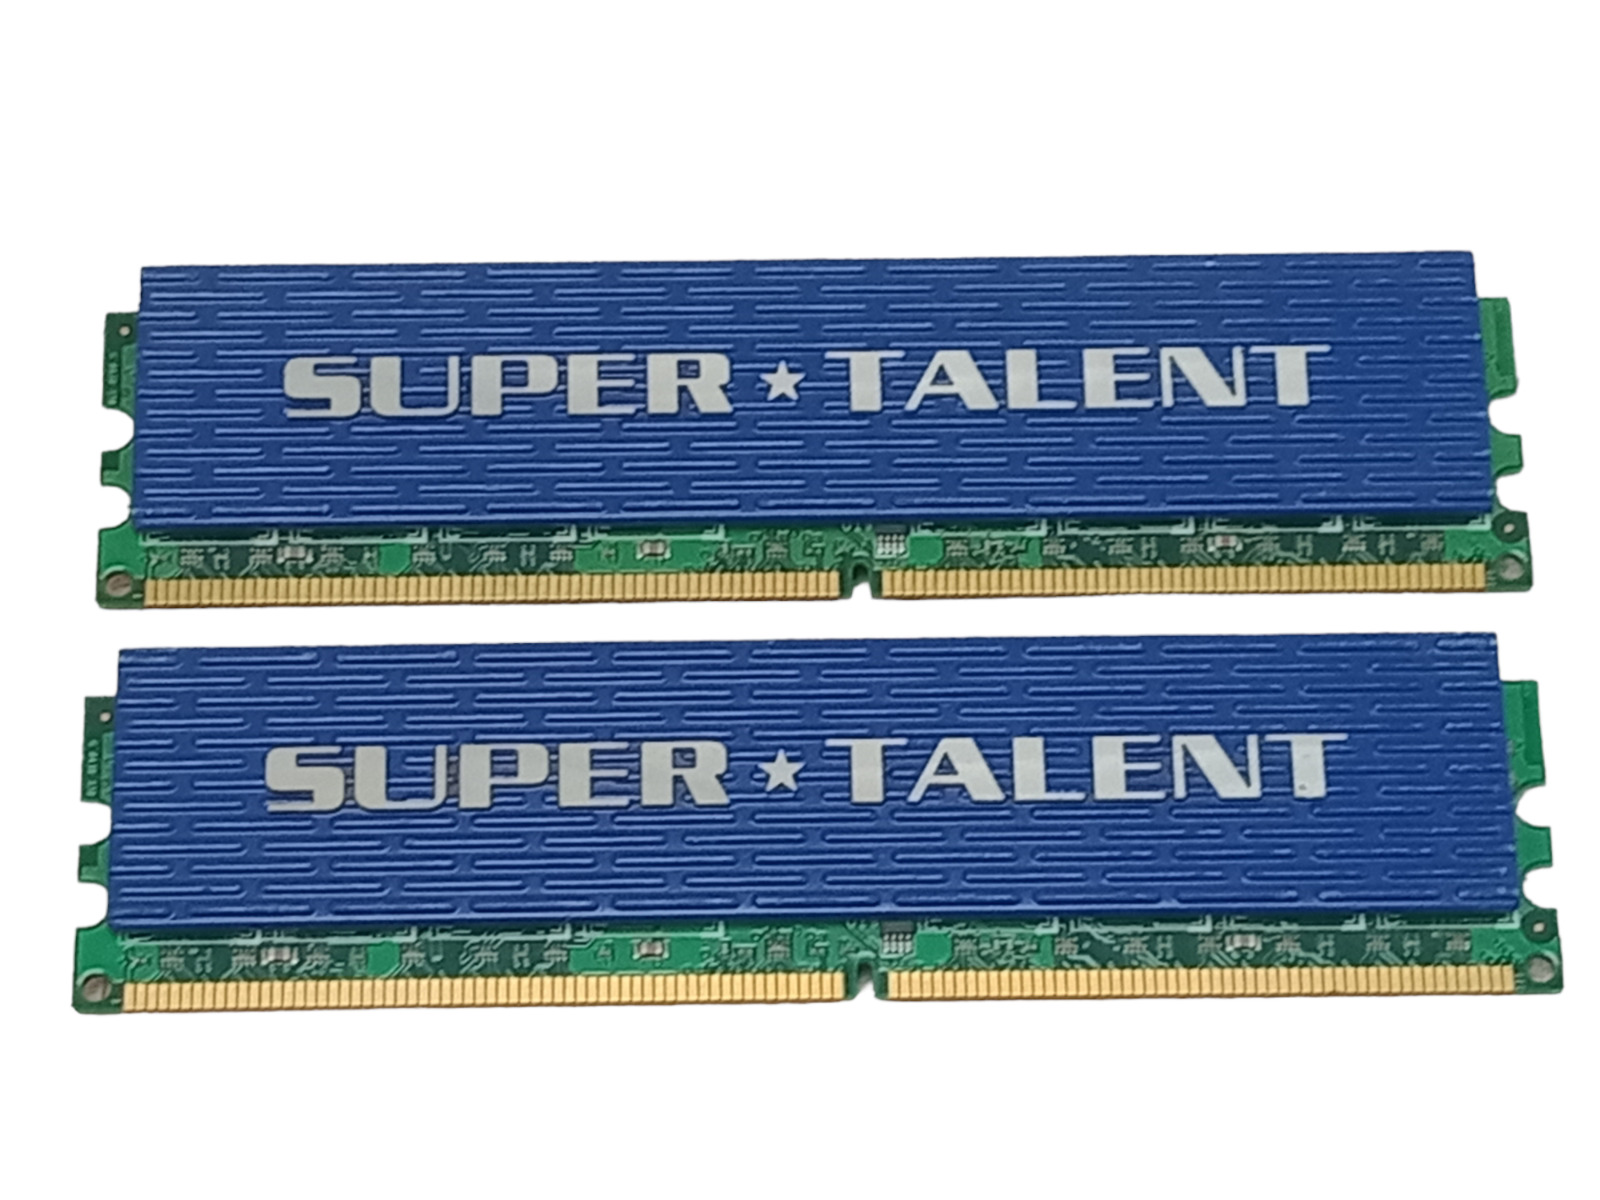 Kit of 2 Super Talent T800UX4GC5 4GB (2GBx2) DDR2-800 PC2-6400 DIMM RAM | Works